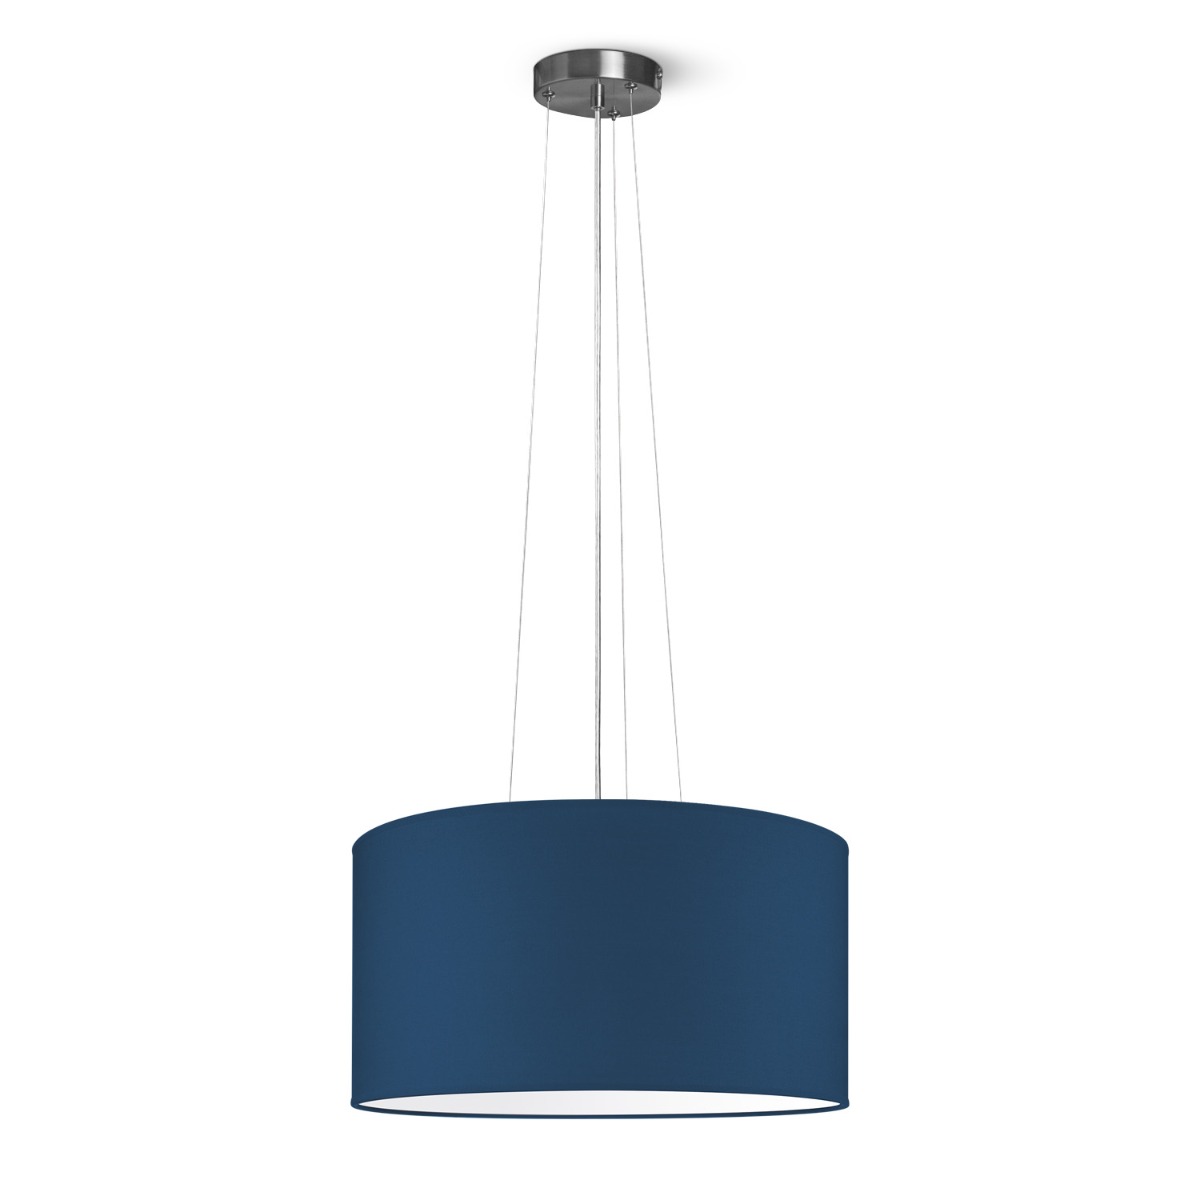 Light depot - hanglamp Hover Bling Ø 50 cm - blauw - Outlet